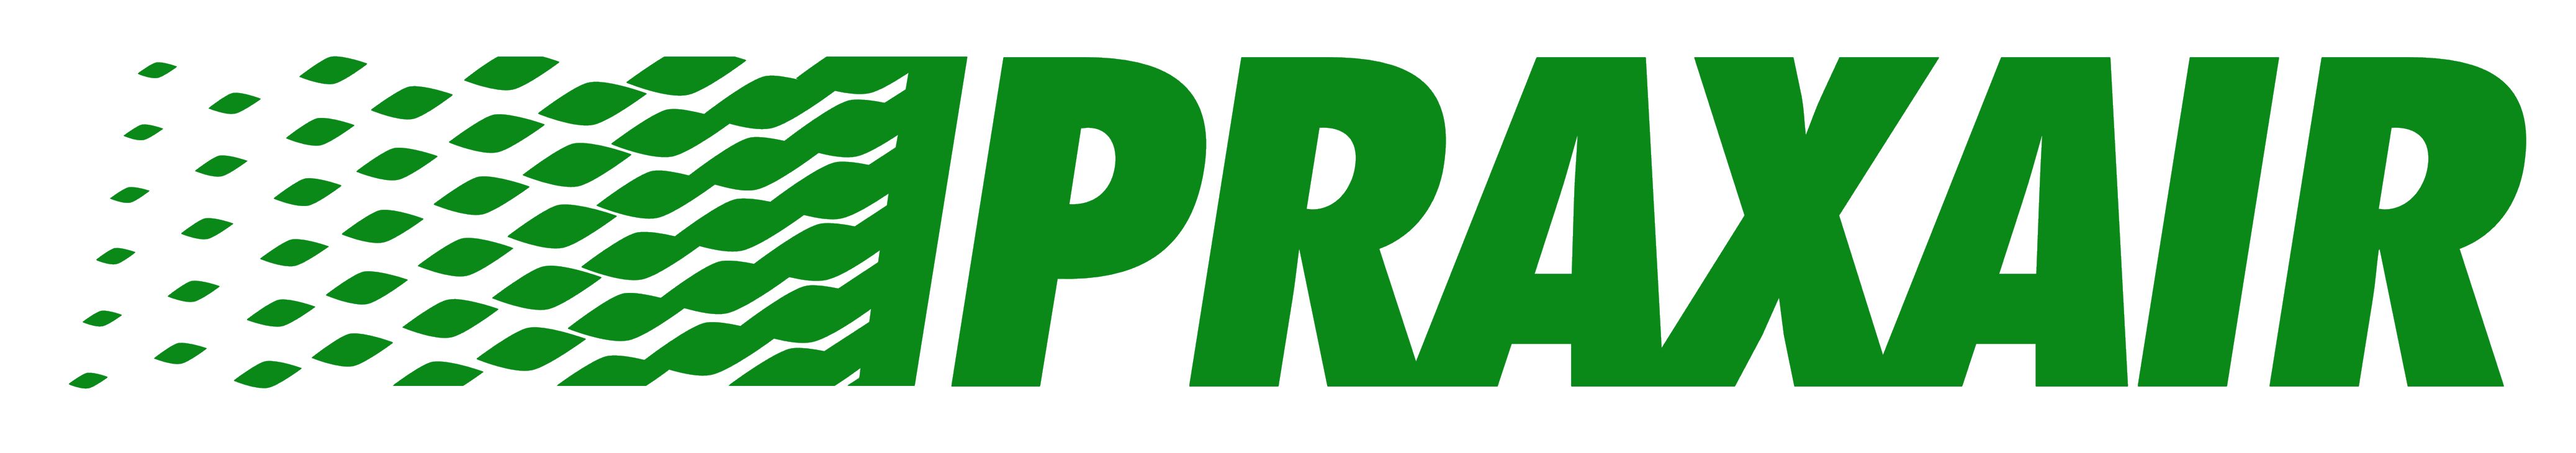 Praxair logo, logotype